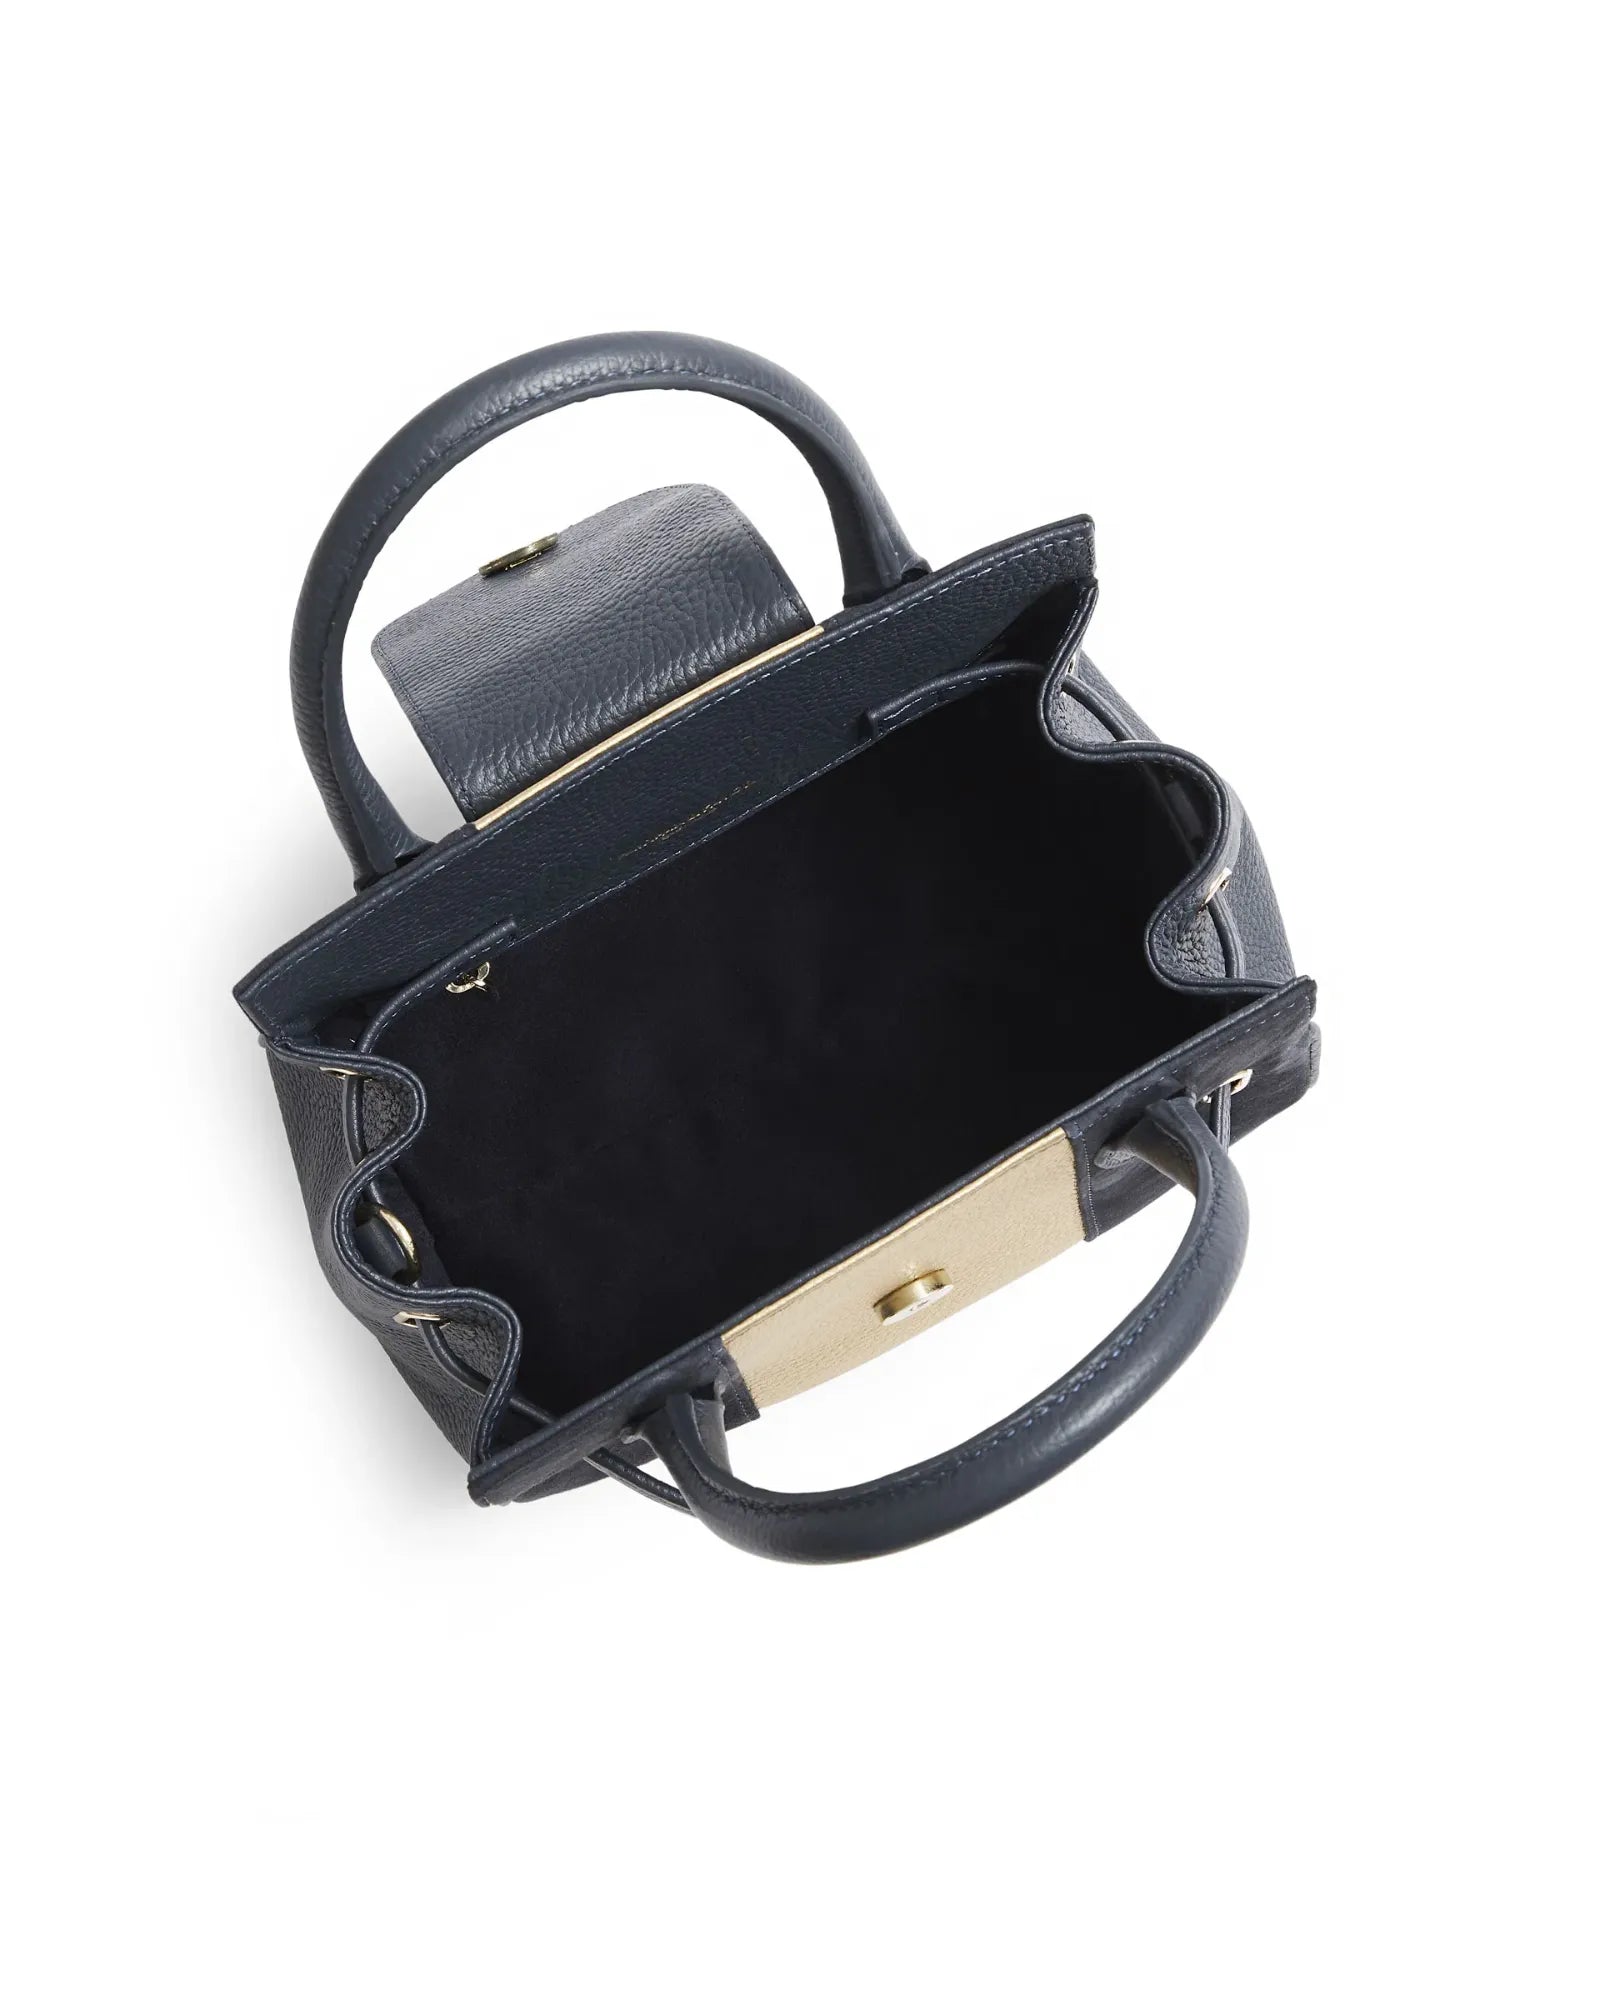 The Mini Windsor Handbag in Navy & Gold Suede